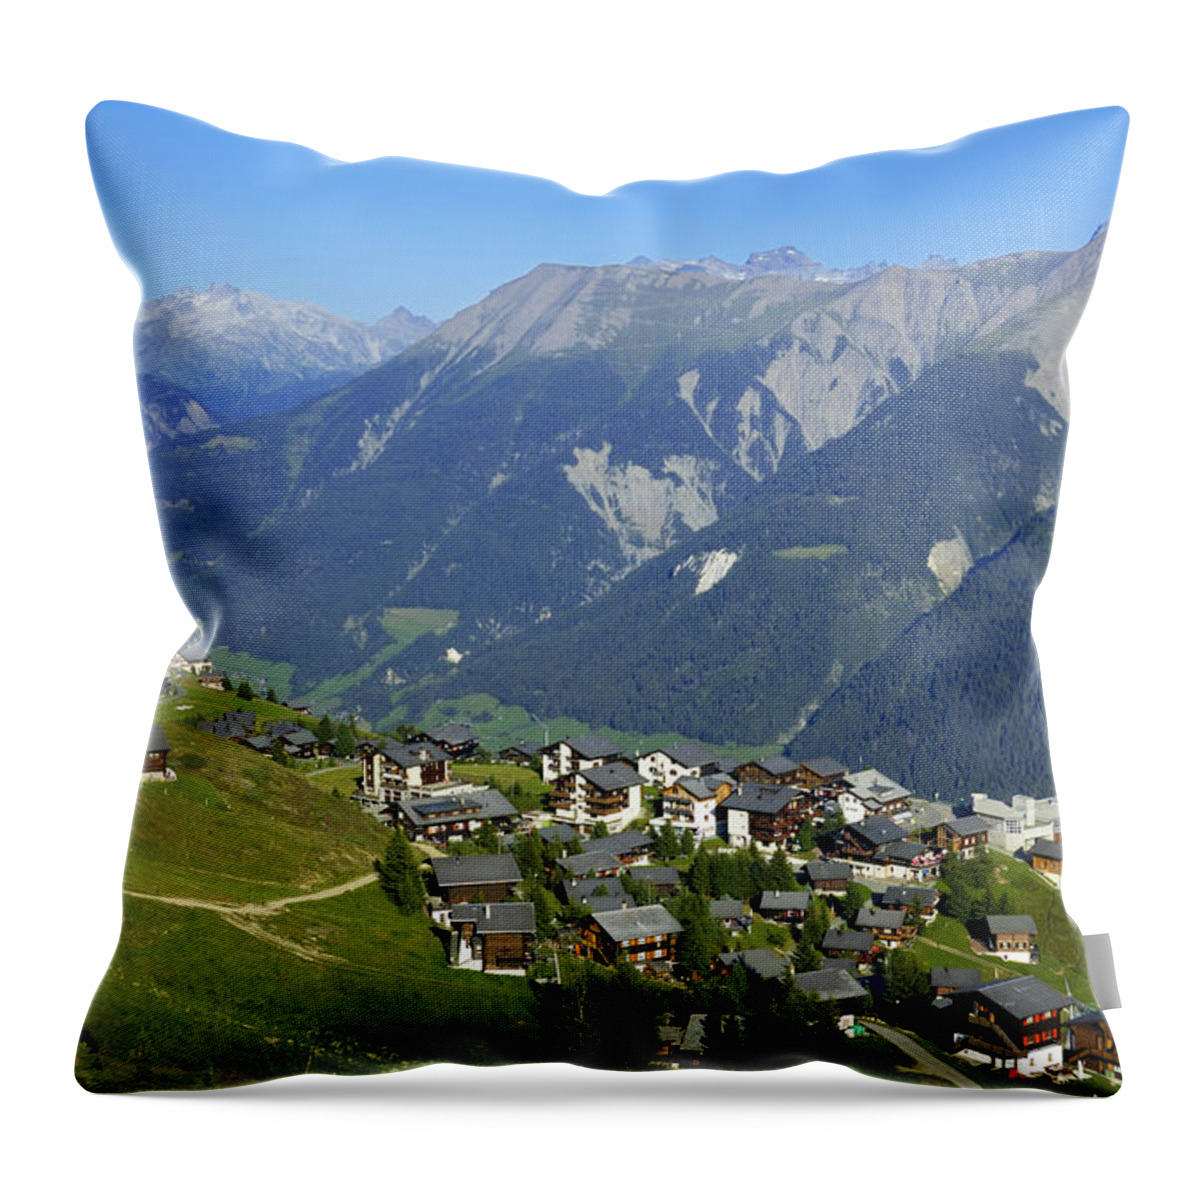 Swiss Alps Throw Pillow featuring the photograph Riederalp Valais Swiss Alps Switzerland by Matthias Hauser